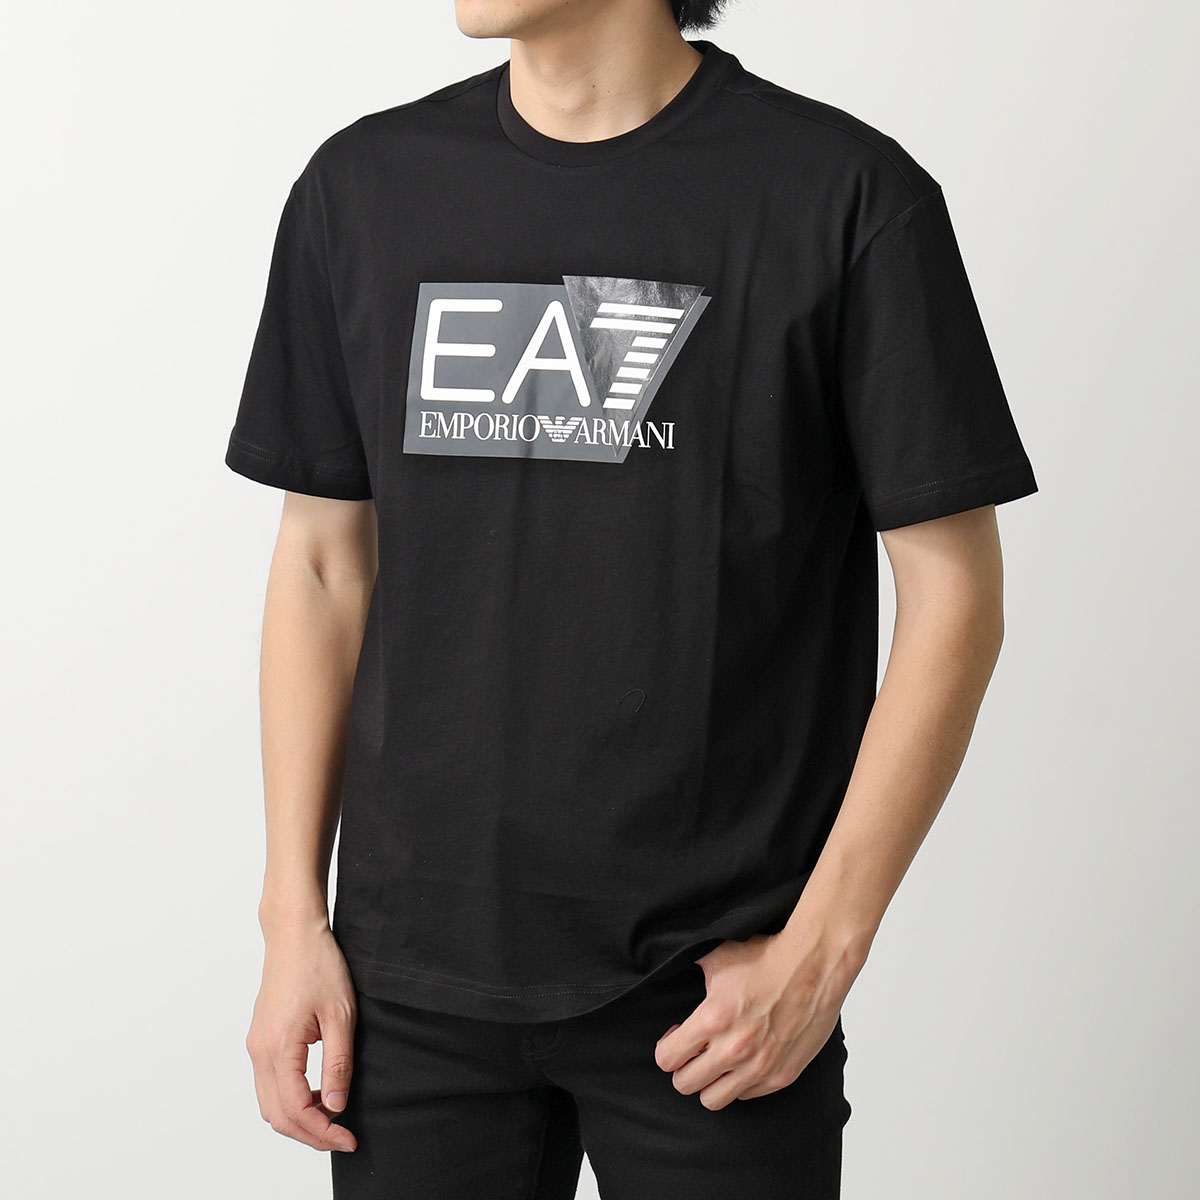 EA7 EMPORIO ARMANI エアセッテ エンポリオアルマーニ Tシャツ 3DPT09 PJ02Z メンズ 半袖 カットソー クルーネック  ロゴT コットン カラー2色